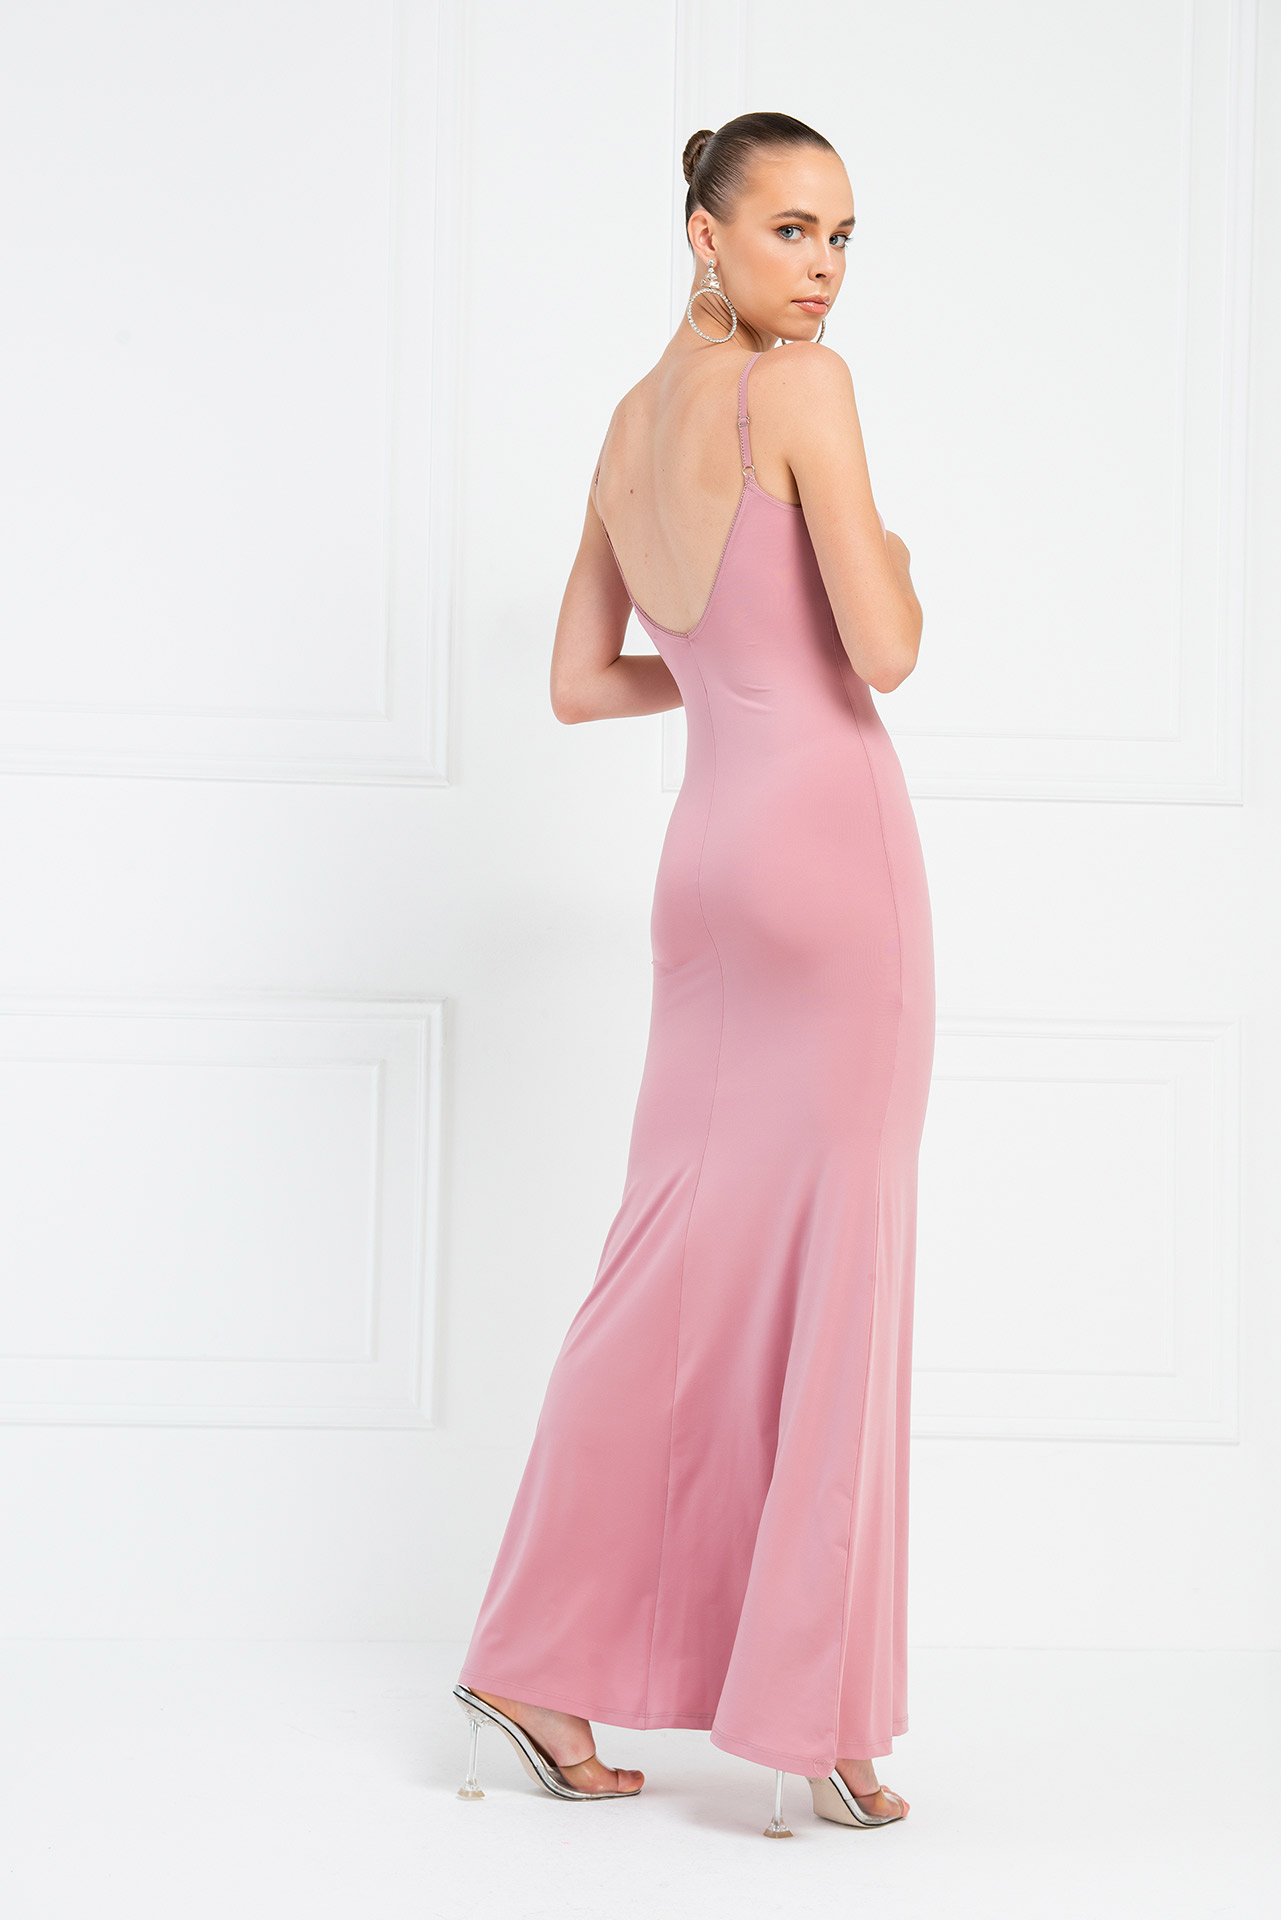 оптовая Light Rose Платье Макси с V-Образным Вырезом